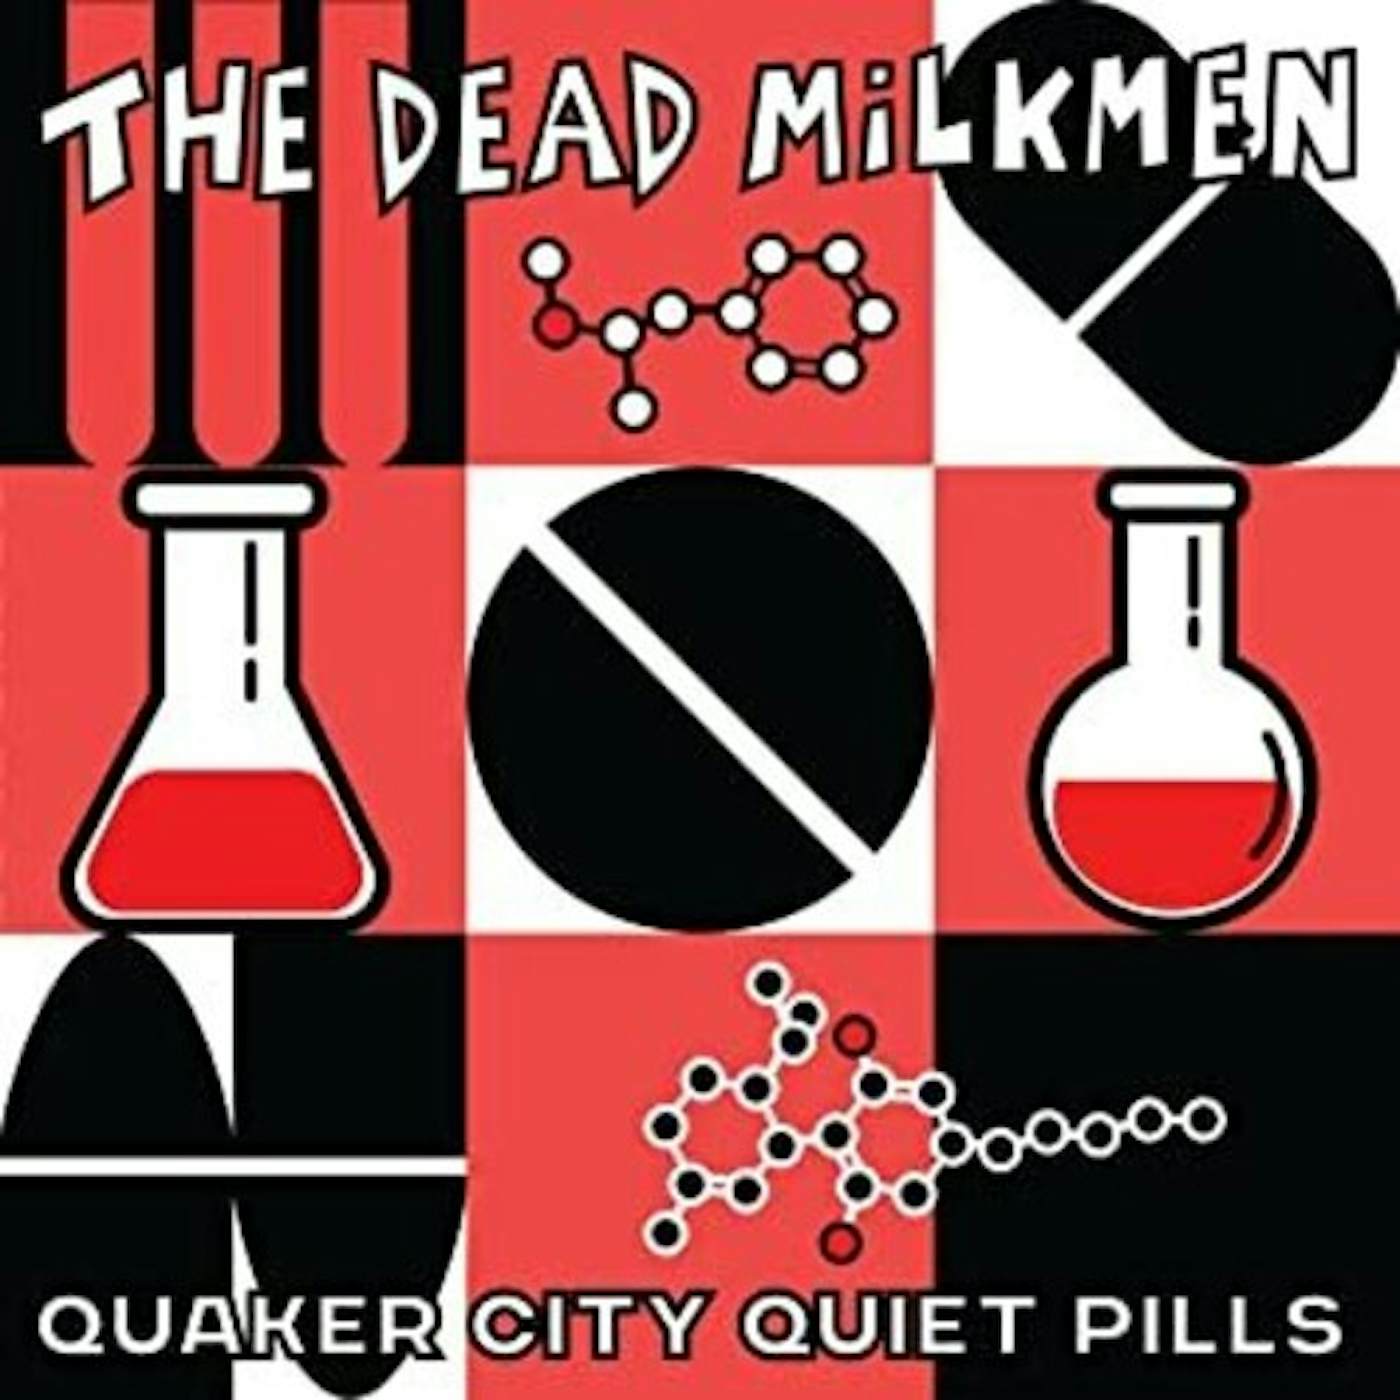 The Dead Milkmen QUAKER CITY QUIET PILLS Vinyl Record